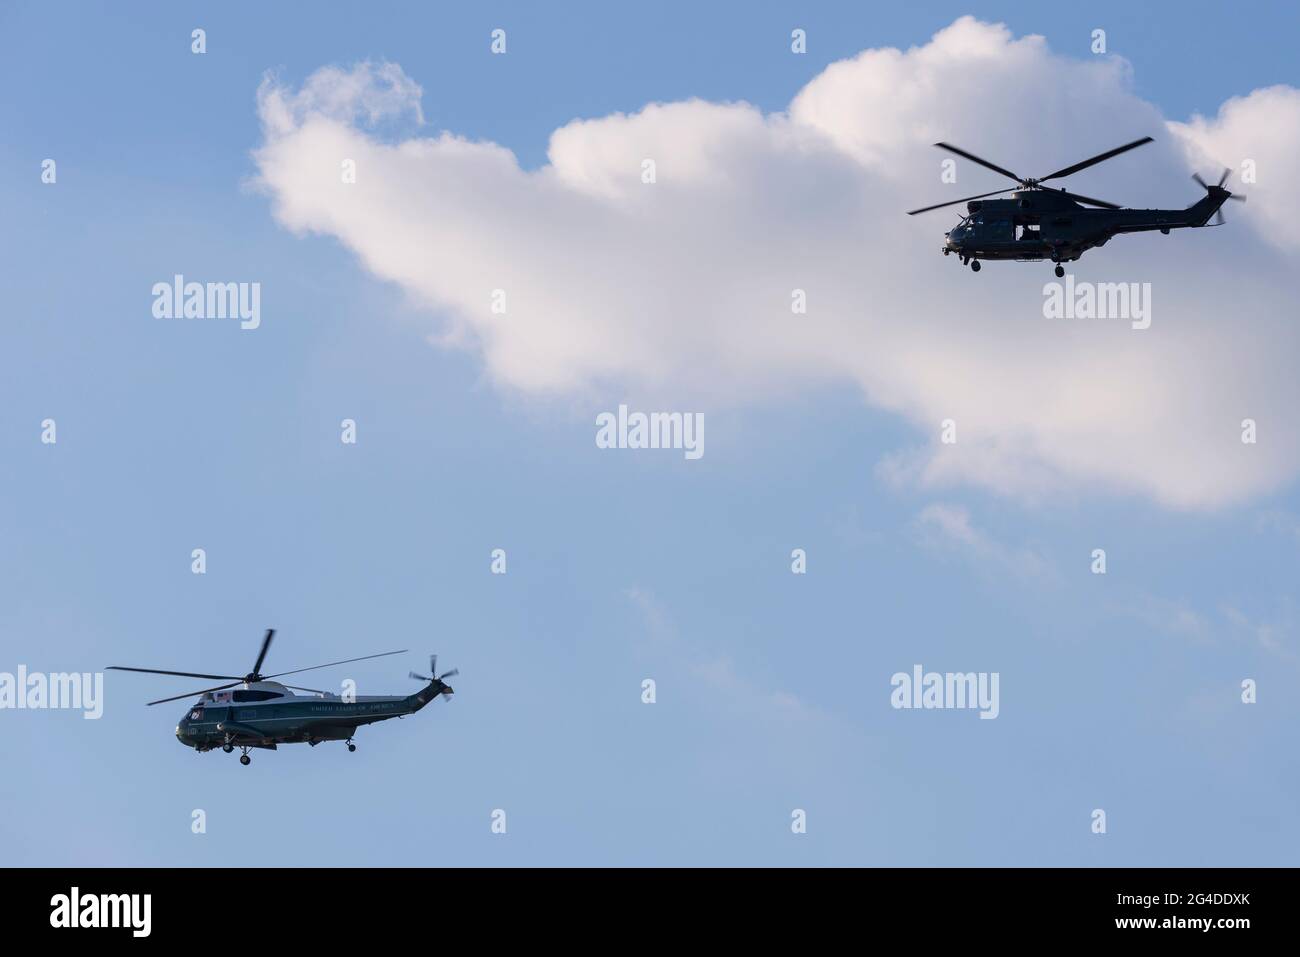 US-Präsident Joe Biden, der am Flughafen Heathrow im Sea King Hubschrauber-Rufzeichen Marine One ankommt, begleitet von der militärischen Sicherheitskräfte von RAF Puma. Stockfoto